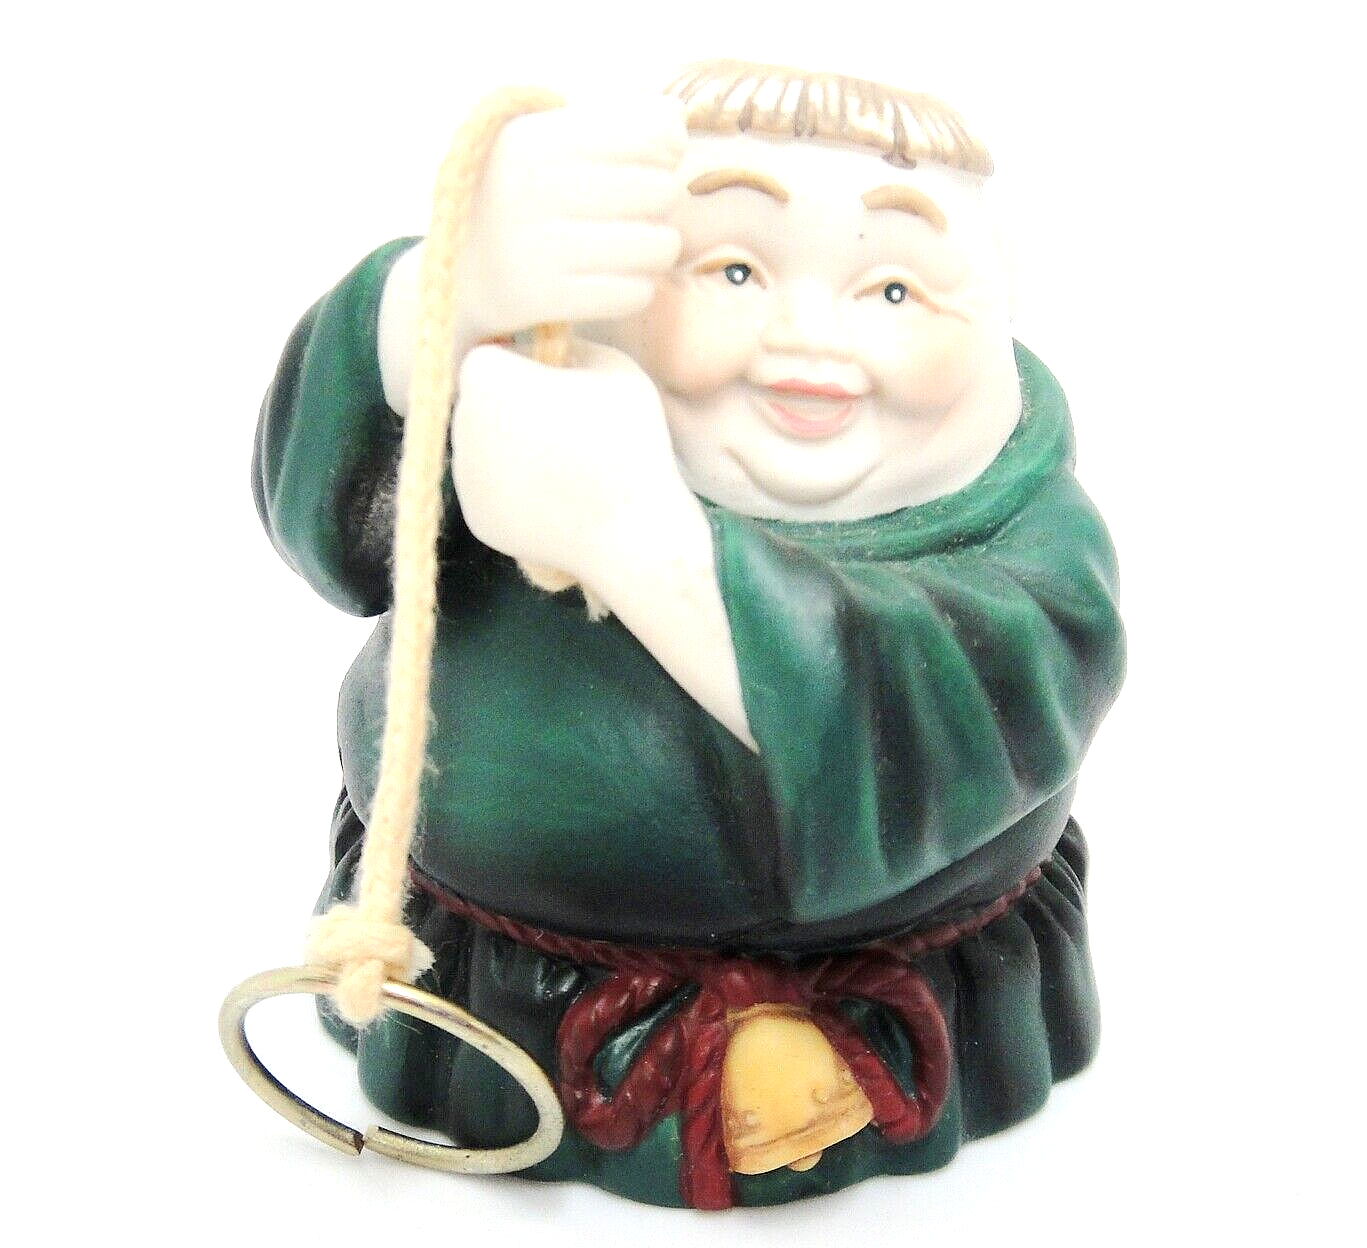 Dept 56 Friar Monk Church Bell Ringer Porcelain Green Robe Legs are Clapper - $9.41